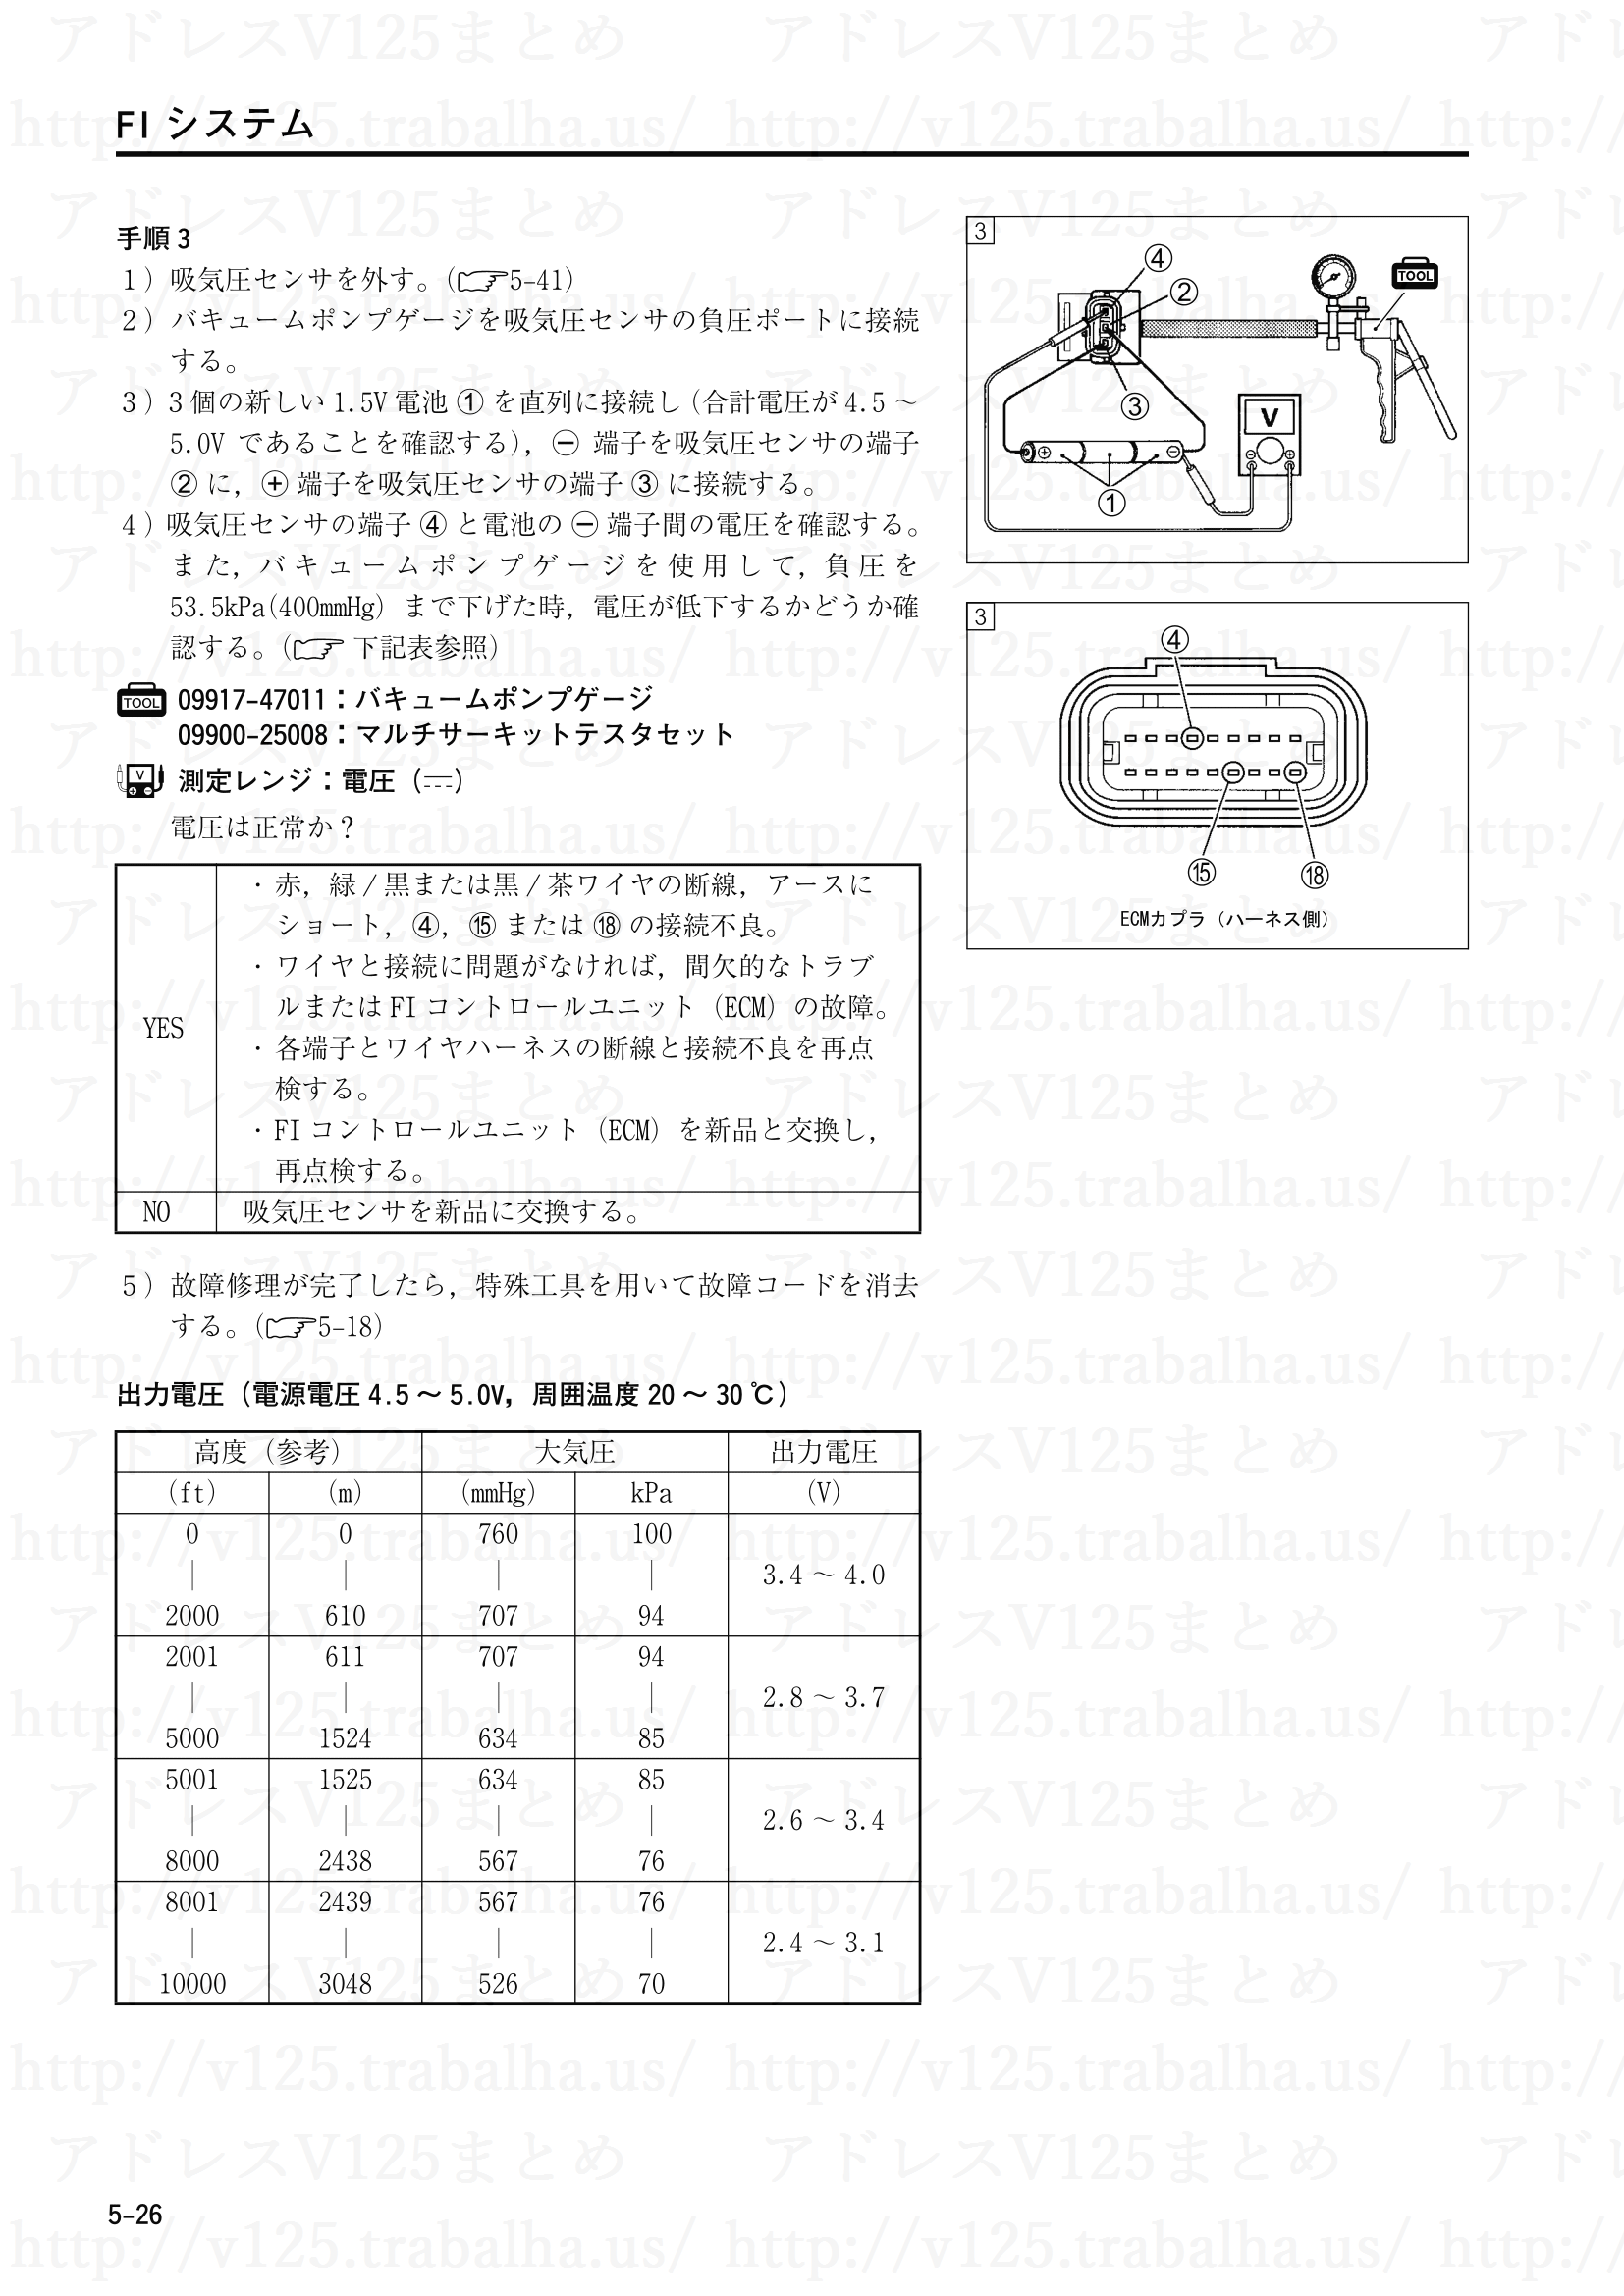 5-26【FIシステム】“C13”吸気圧センサ(IAPS)回路の故障3